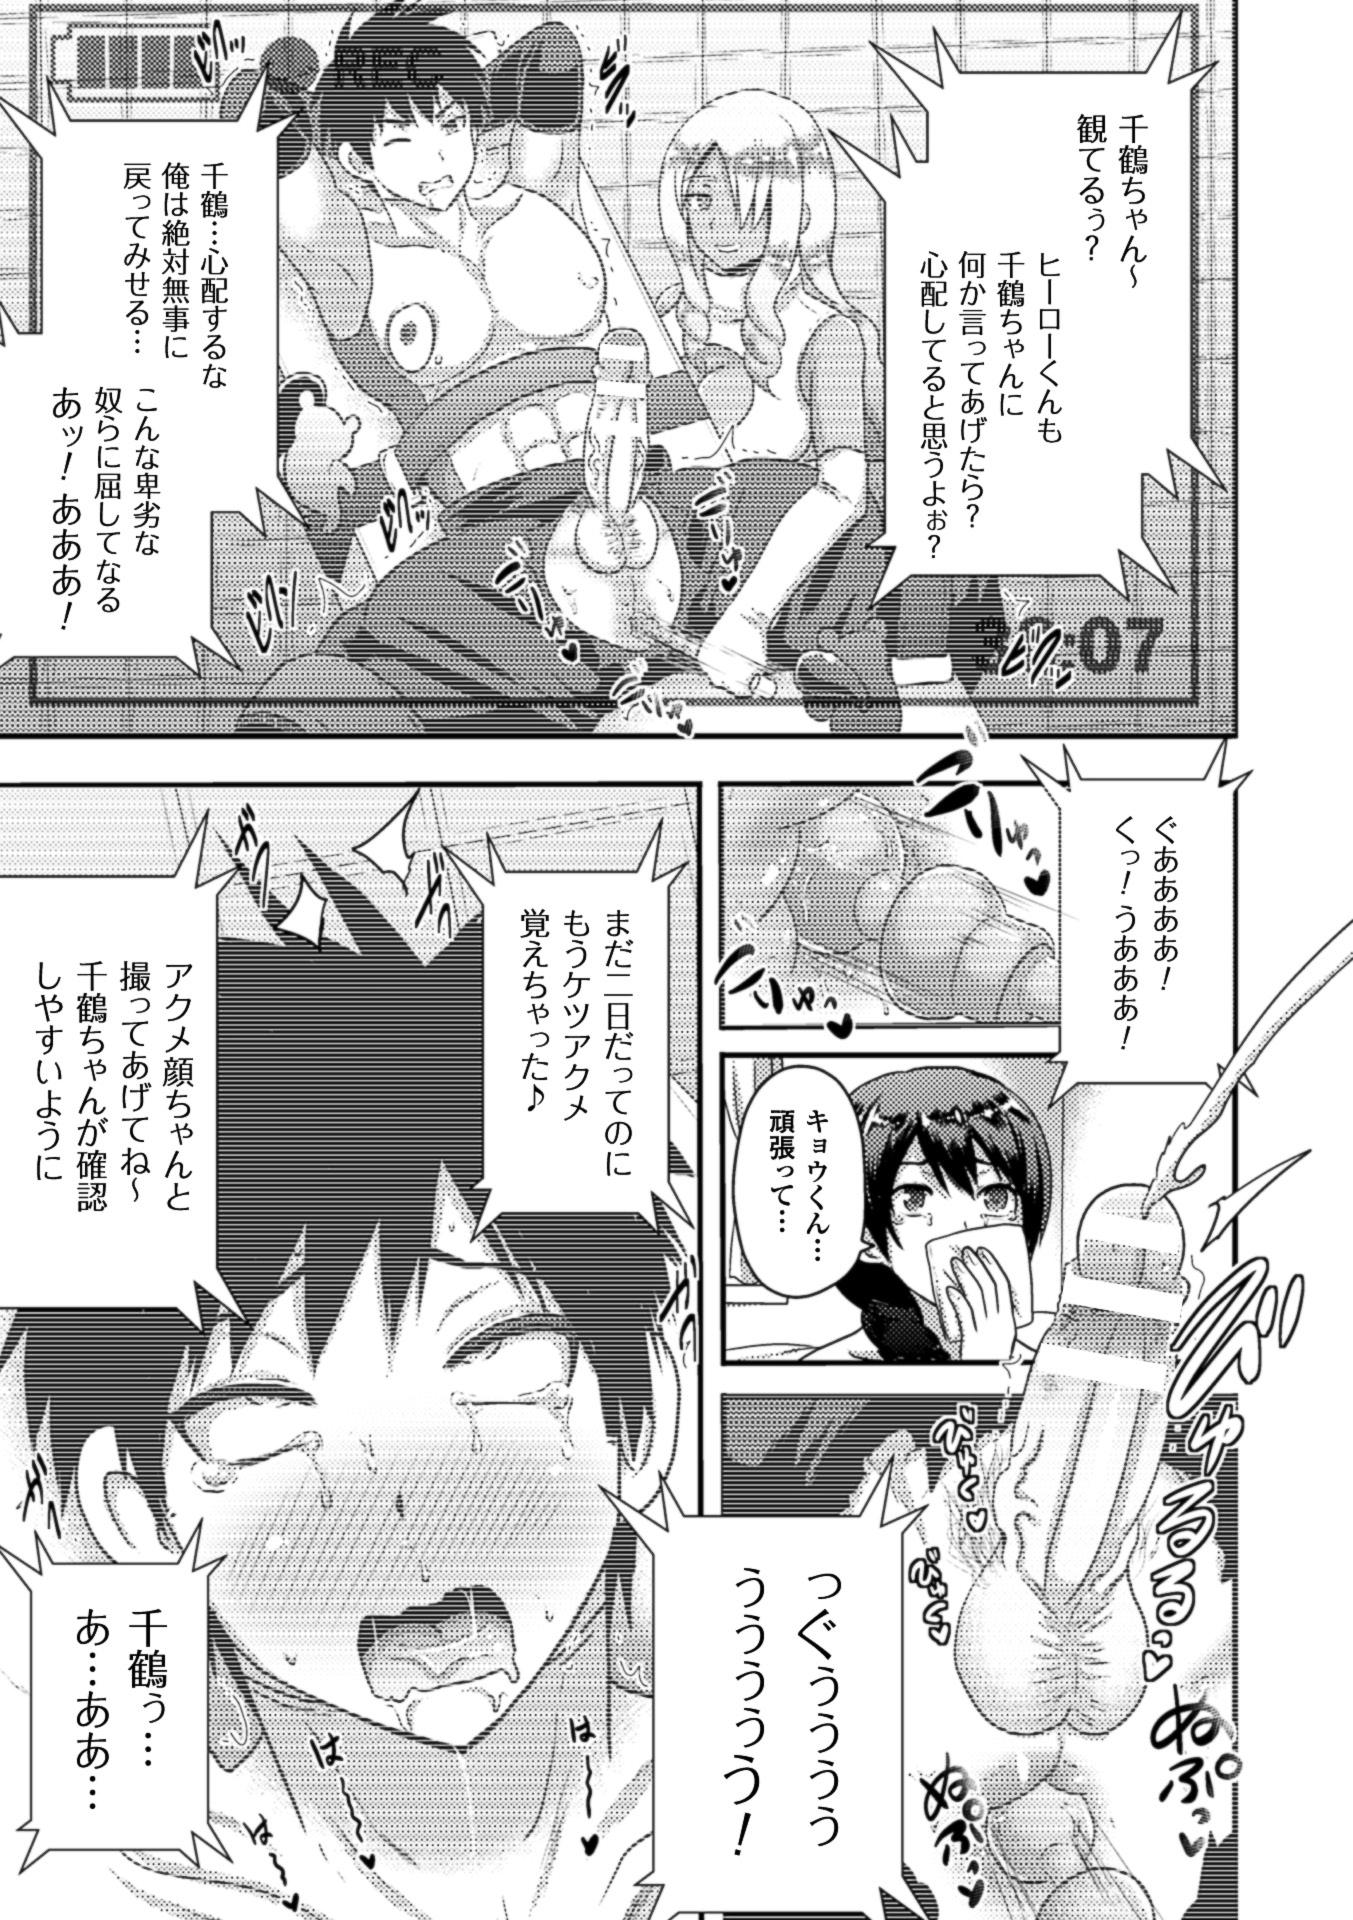 2D Comic Magazine Netorareta Kanojo kara no Video Letter de Utsu Bokki! Vol. 2 64